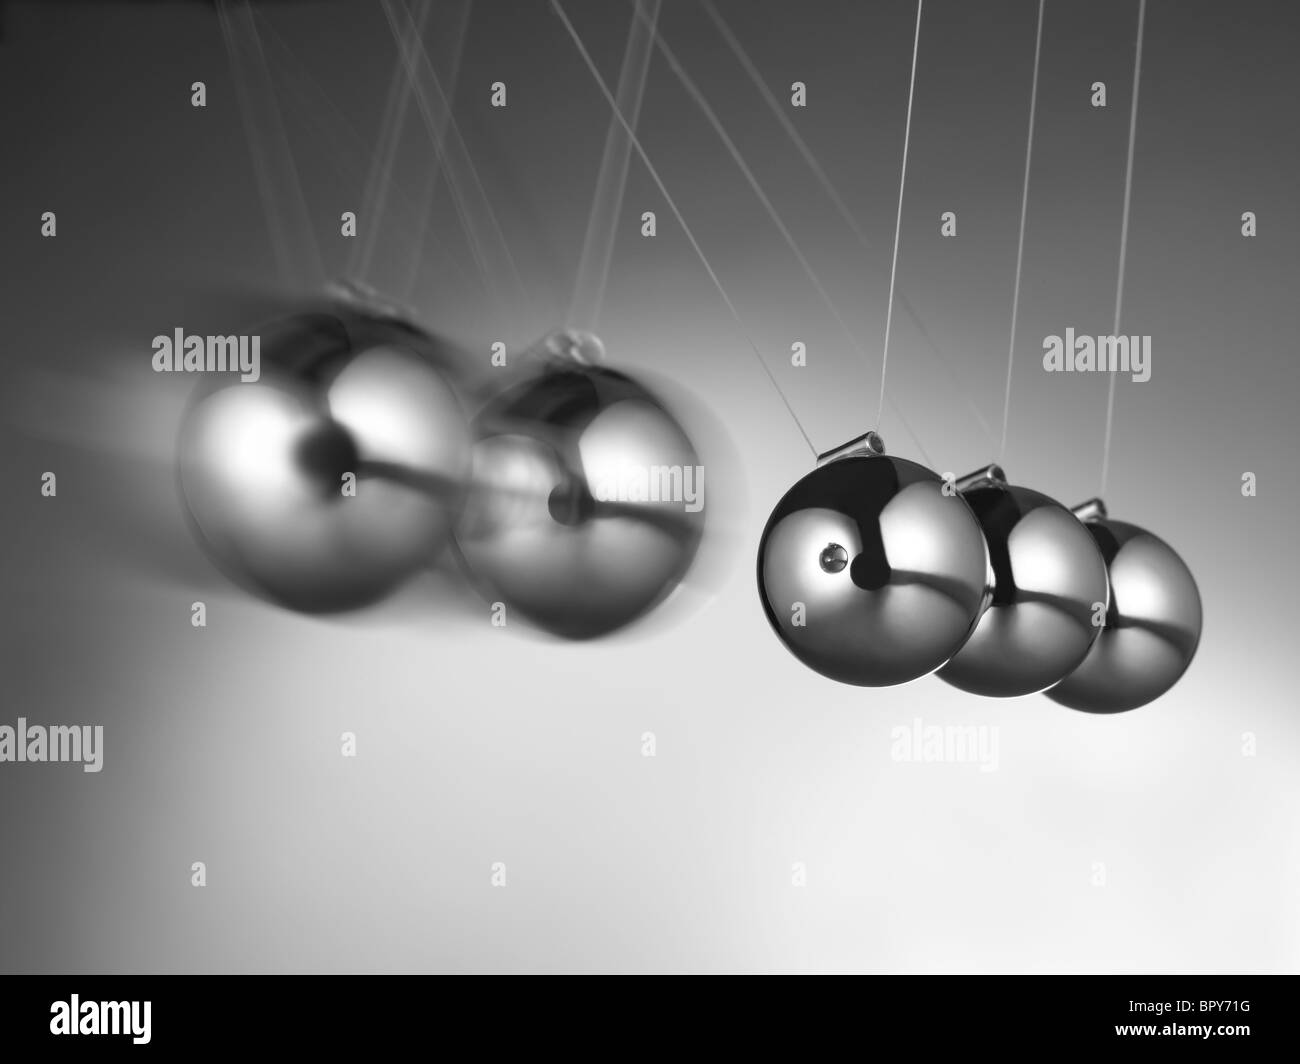 Newton's cradle contenant cinq boules de métal sur un fond gris. Le pendule de Newton en action, le déplacement des sphères métalliques Banque D'Images